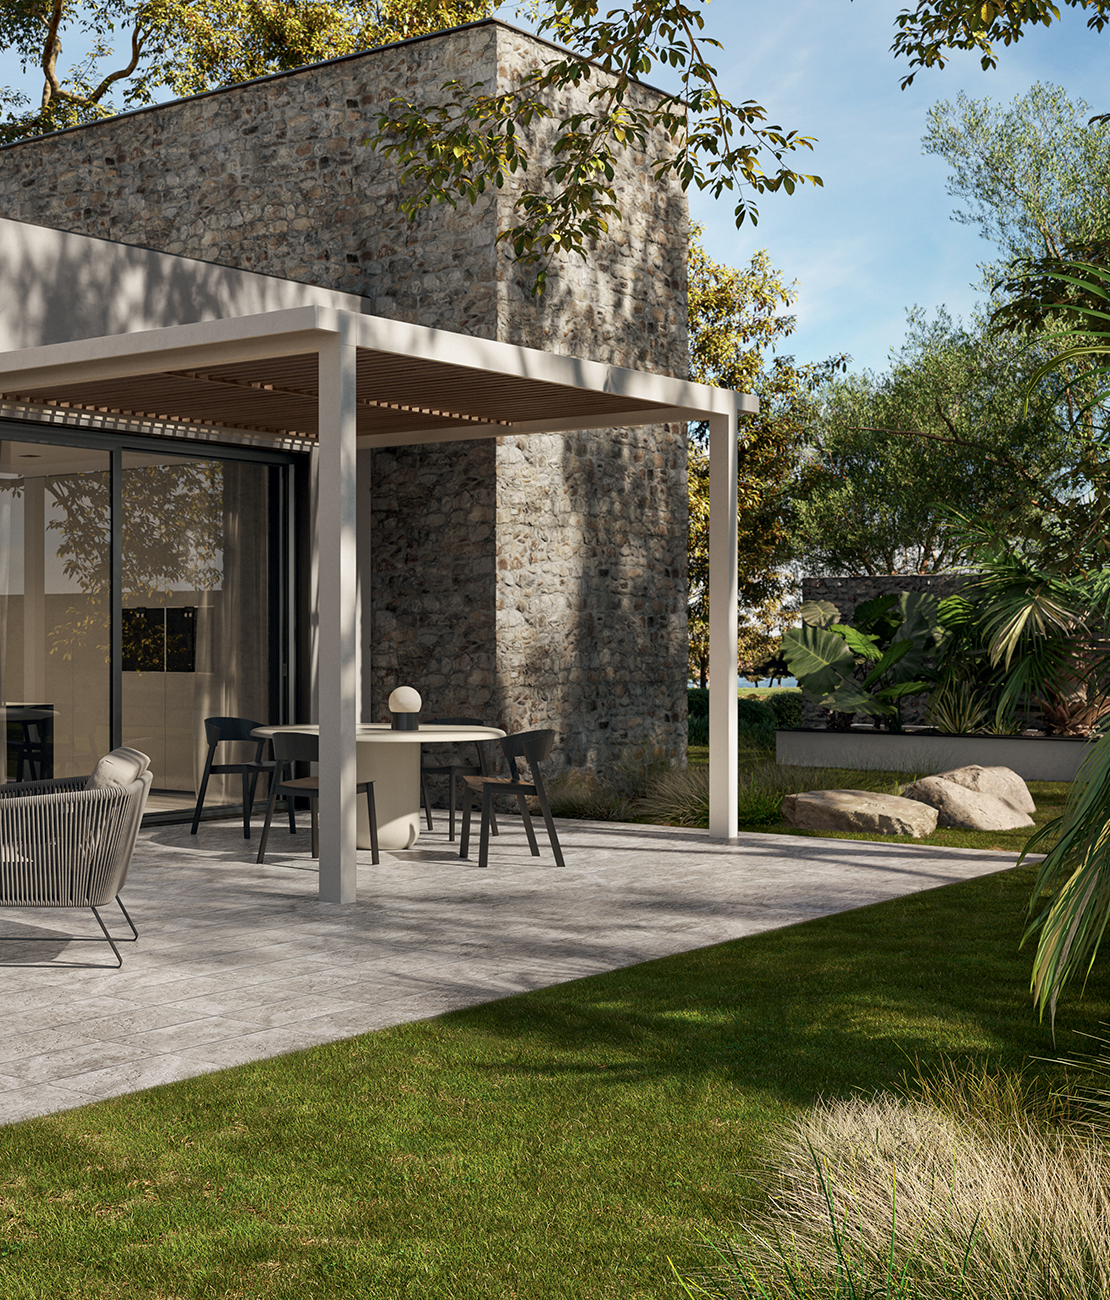 Terrasse moderne avec jardin, sol en grès cérame imitation pierre dans des tons de gris. - Inspirations Iperceramica